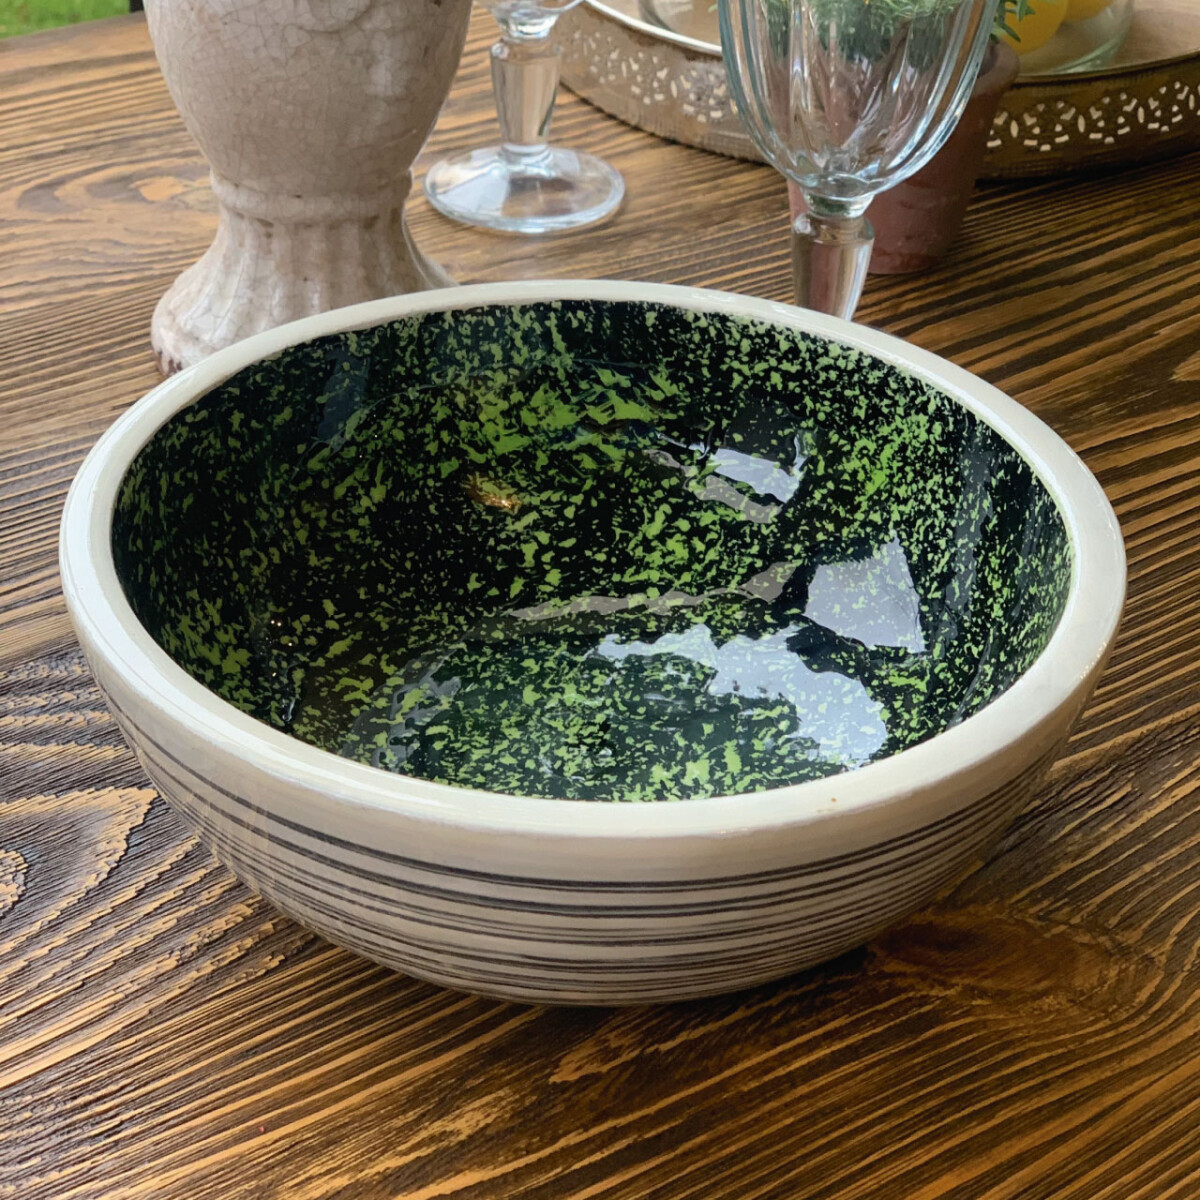 Bowl de madera con diseño esmaltado 